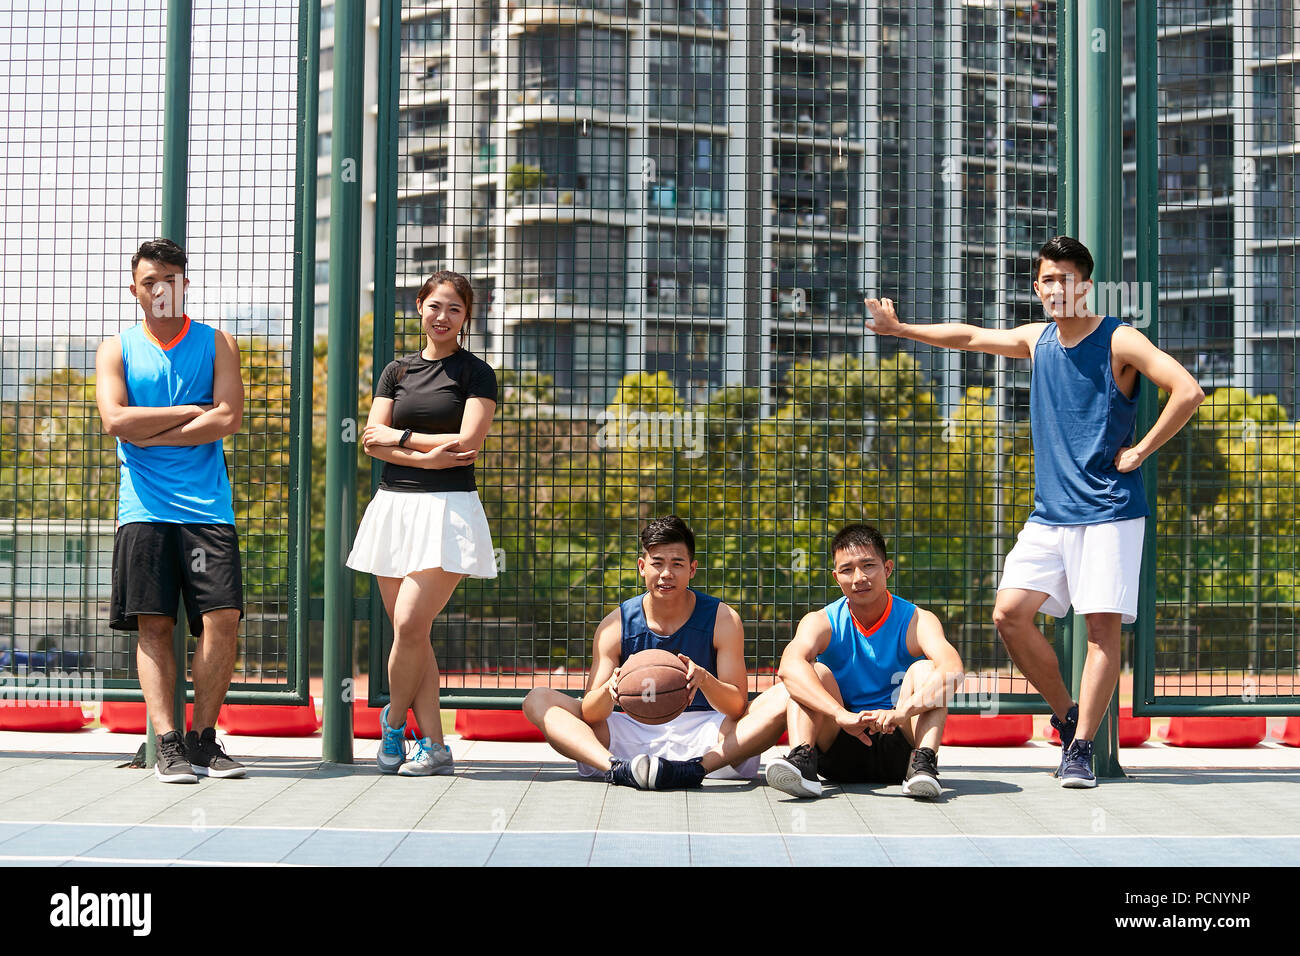 Cinq jeunes adultes asiatiques de détente sur un terrain de basket en plein air après l'exercice. Banque D'Images